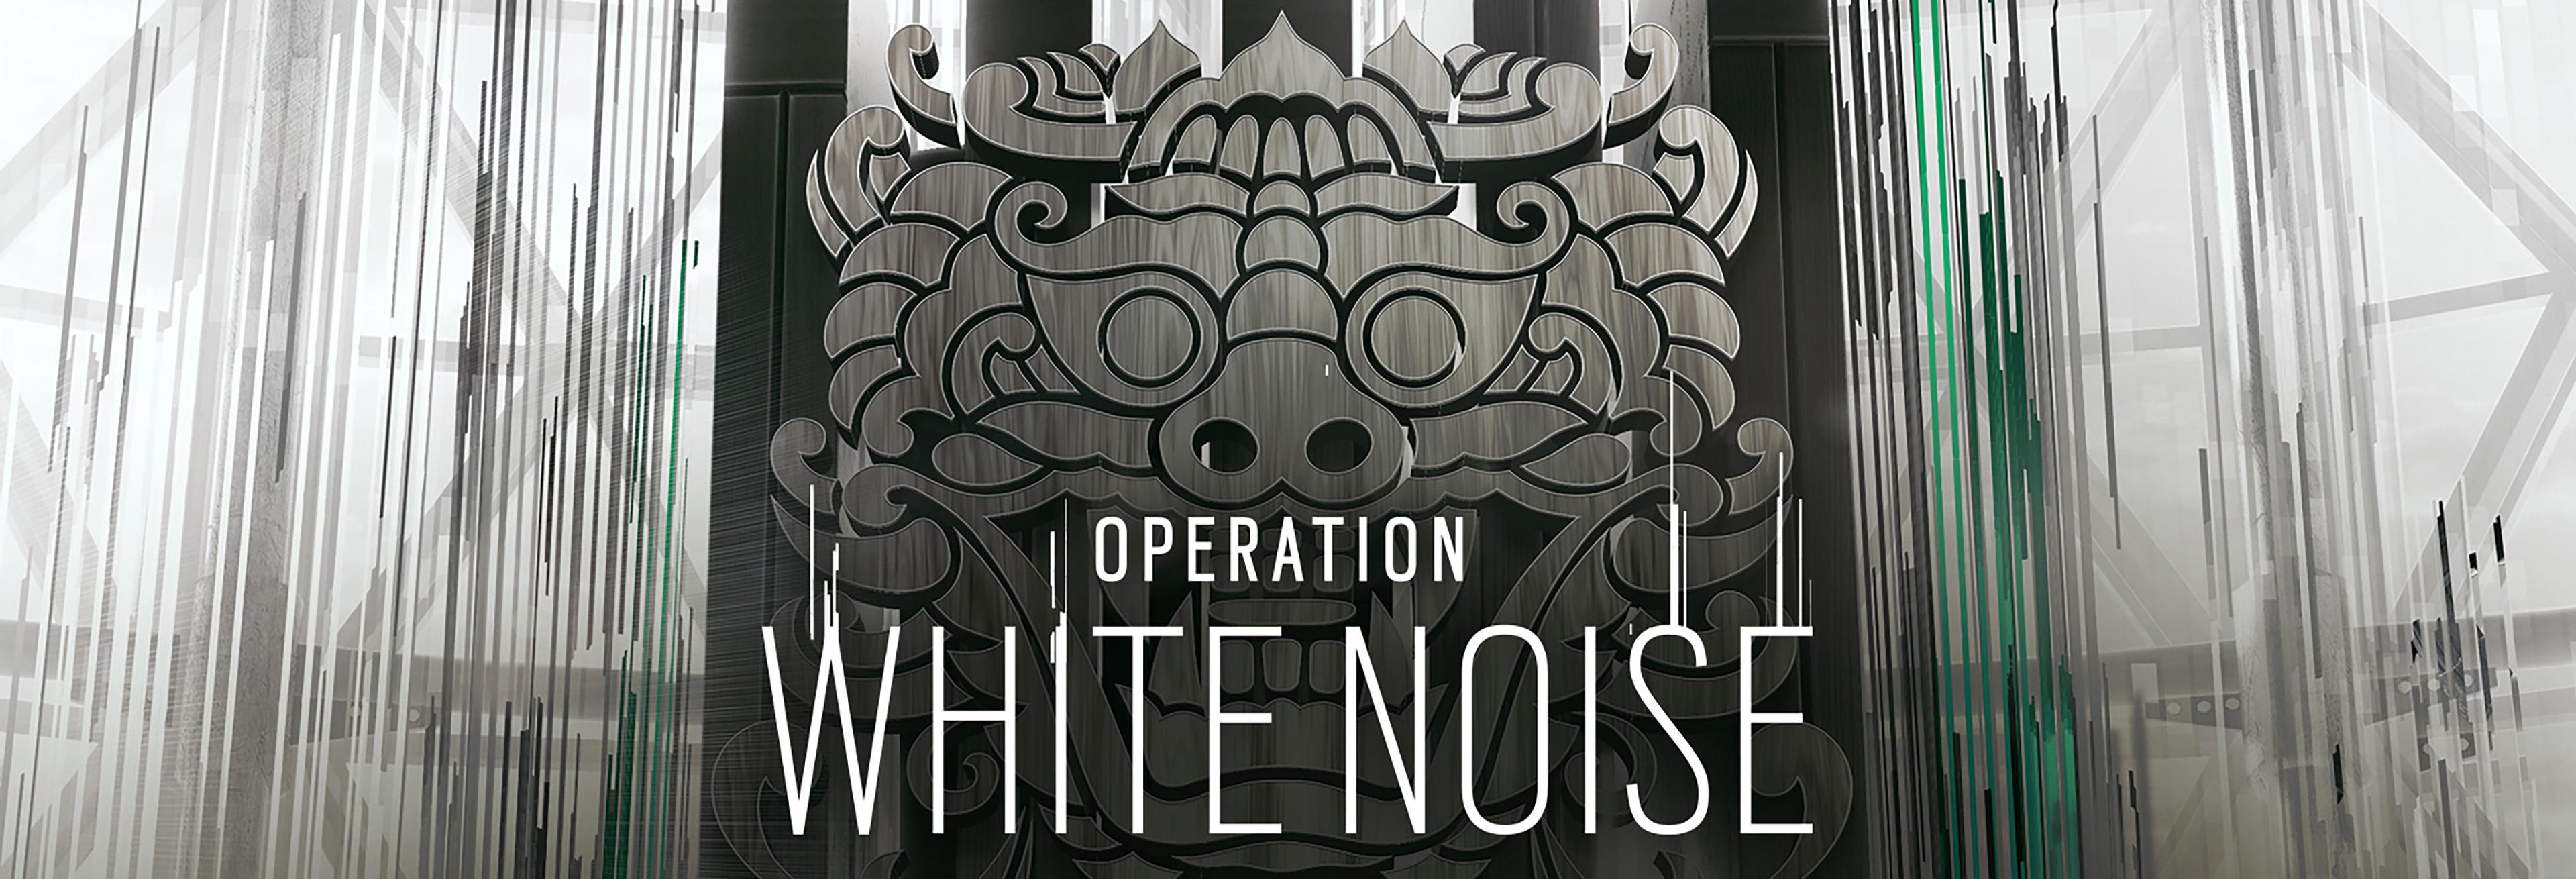 Operation White Noise Wallpaper [4K]